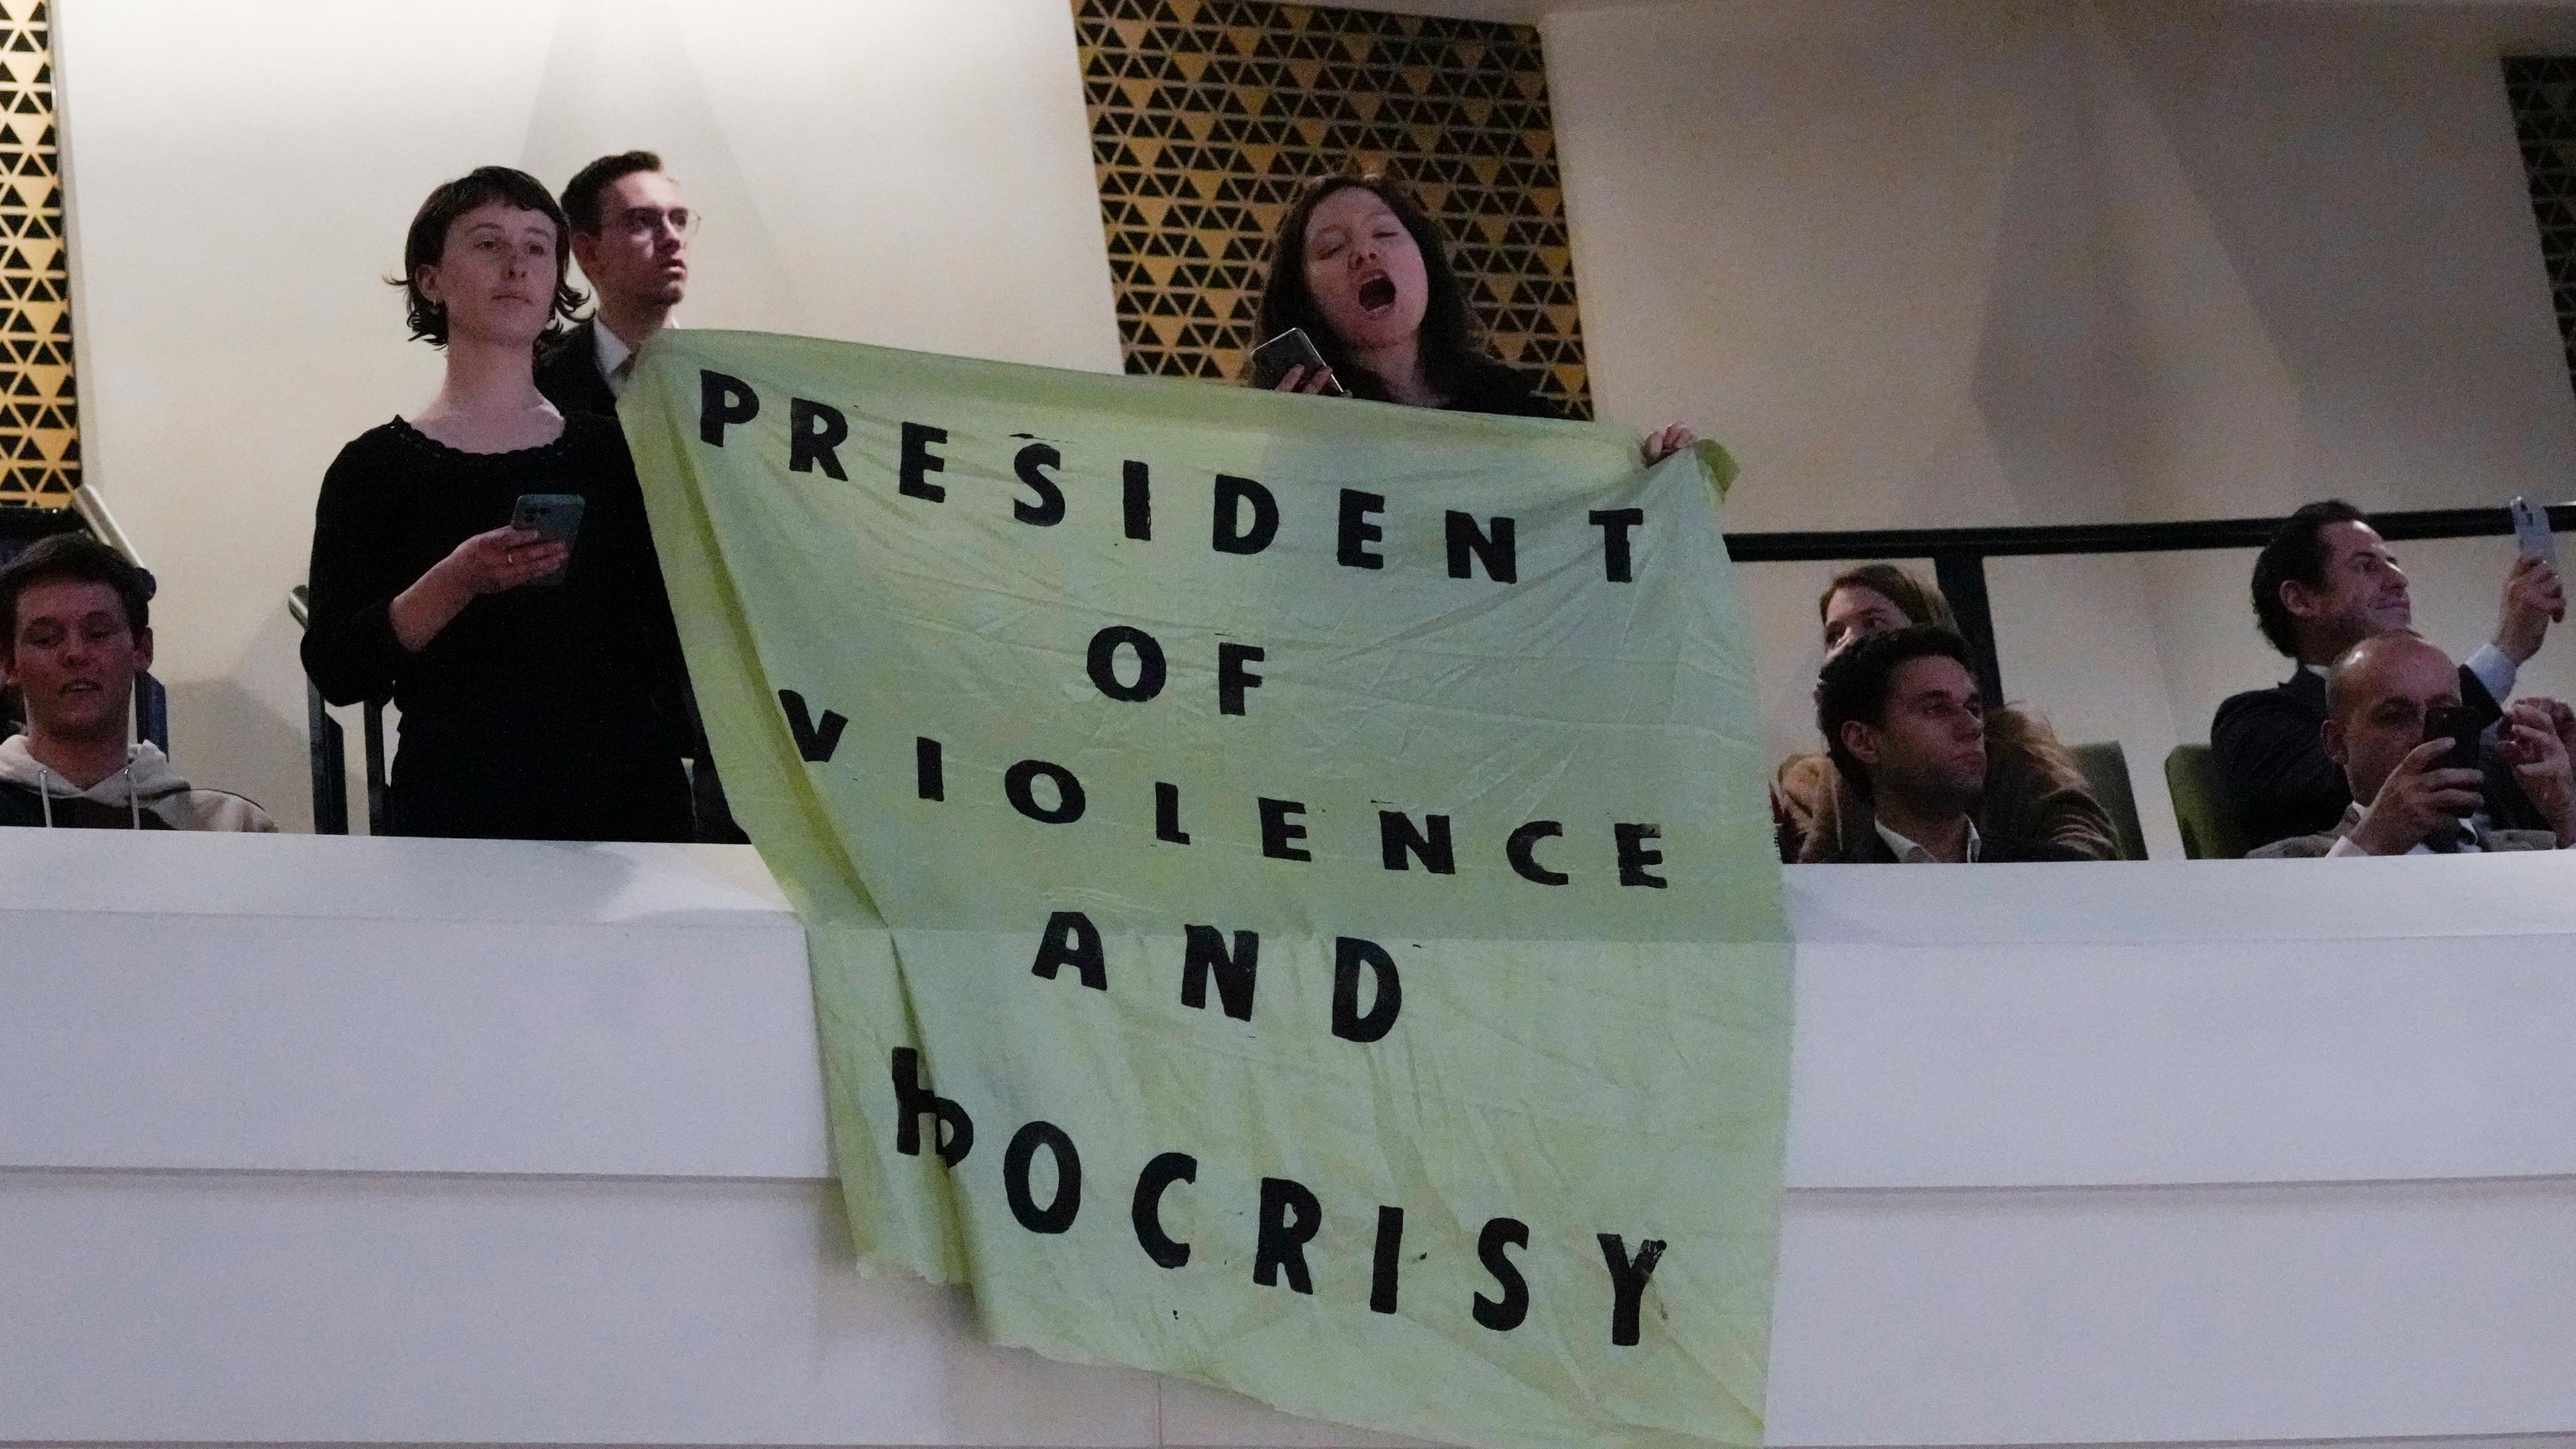 Niederlande, Den Haag: Demonstranten halten ein Transparent mit der Aufschrift "Präsident der Gewalt und der Heuchelei" hoch, während der französische Präsident Macron in einem Theater seine Vision von der Zukunft Europas erläutert.